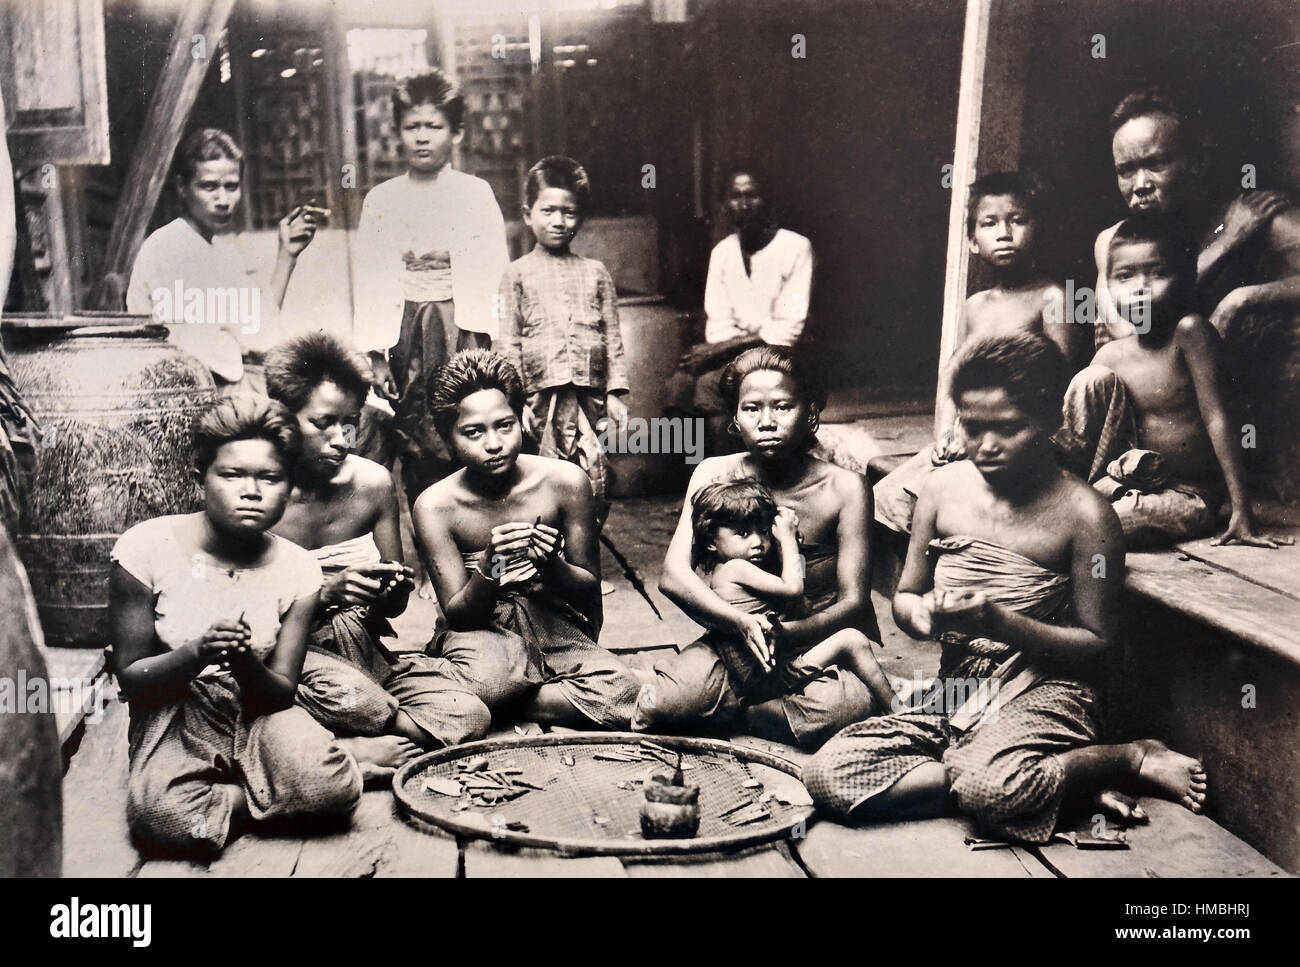 Einheimische Frauen Vorbereitung Betelnuss 1890-1900 Landschaft Thailand Thai Siam (Betel Quid kauen seit jeher ein wichtiger Bestandteil der thailändischen Kultur und Tradition. In der Vergangenheit war das Kauen von Betel eine beliebte tägliche Aktivität bei (Maak)) Stockfoto